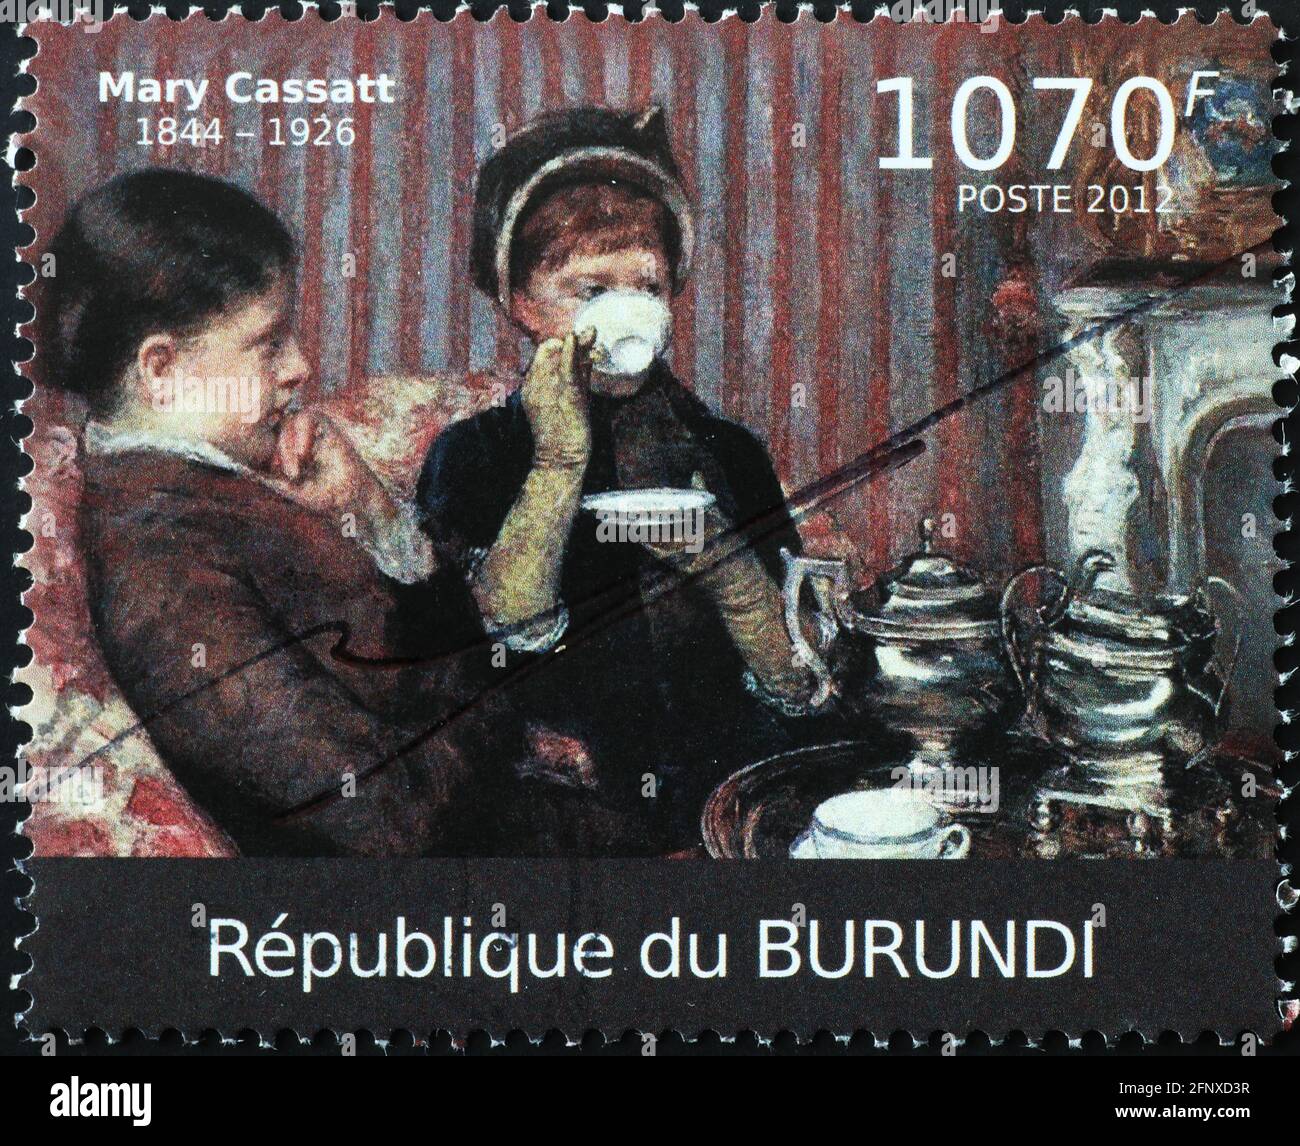 Women drinking tea painted by Mary Cassatt on stamp Stock Photo